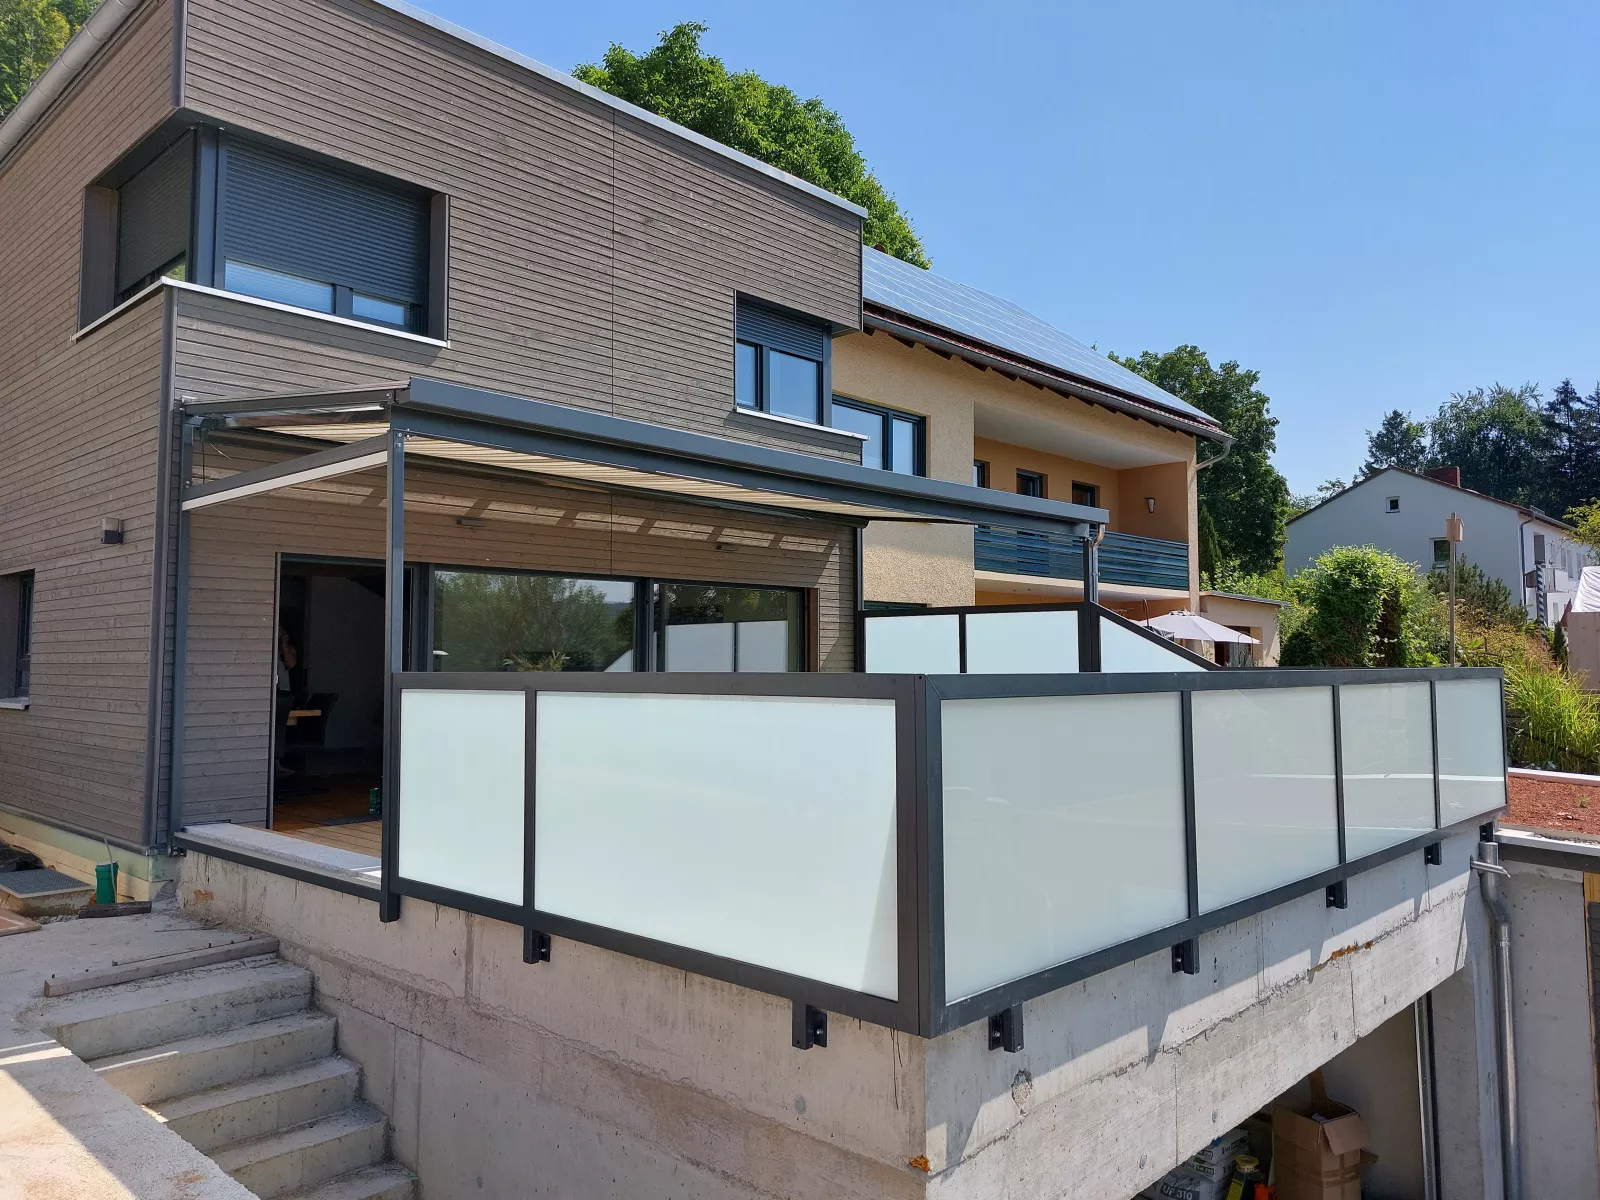 Terrassenueberdachung aus Stahl verzinkt pulverbeschichtet mit Seitenverglasung und Unterbeschattung